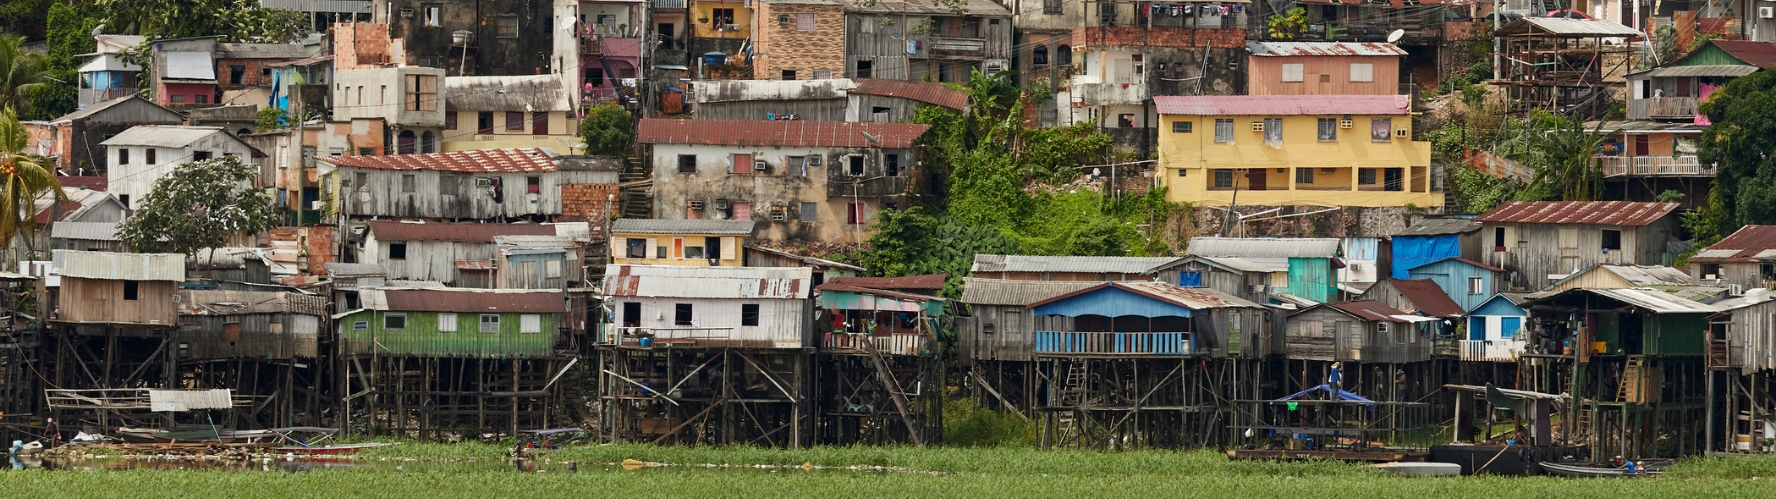 Sloppenwijken zoals deze in Brazilië zullen extra onder druk komen te staan door klimaatmigratie.